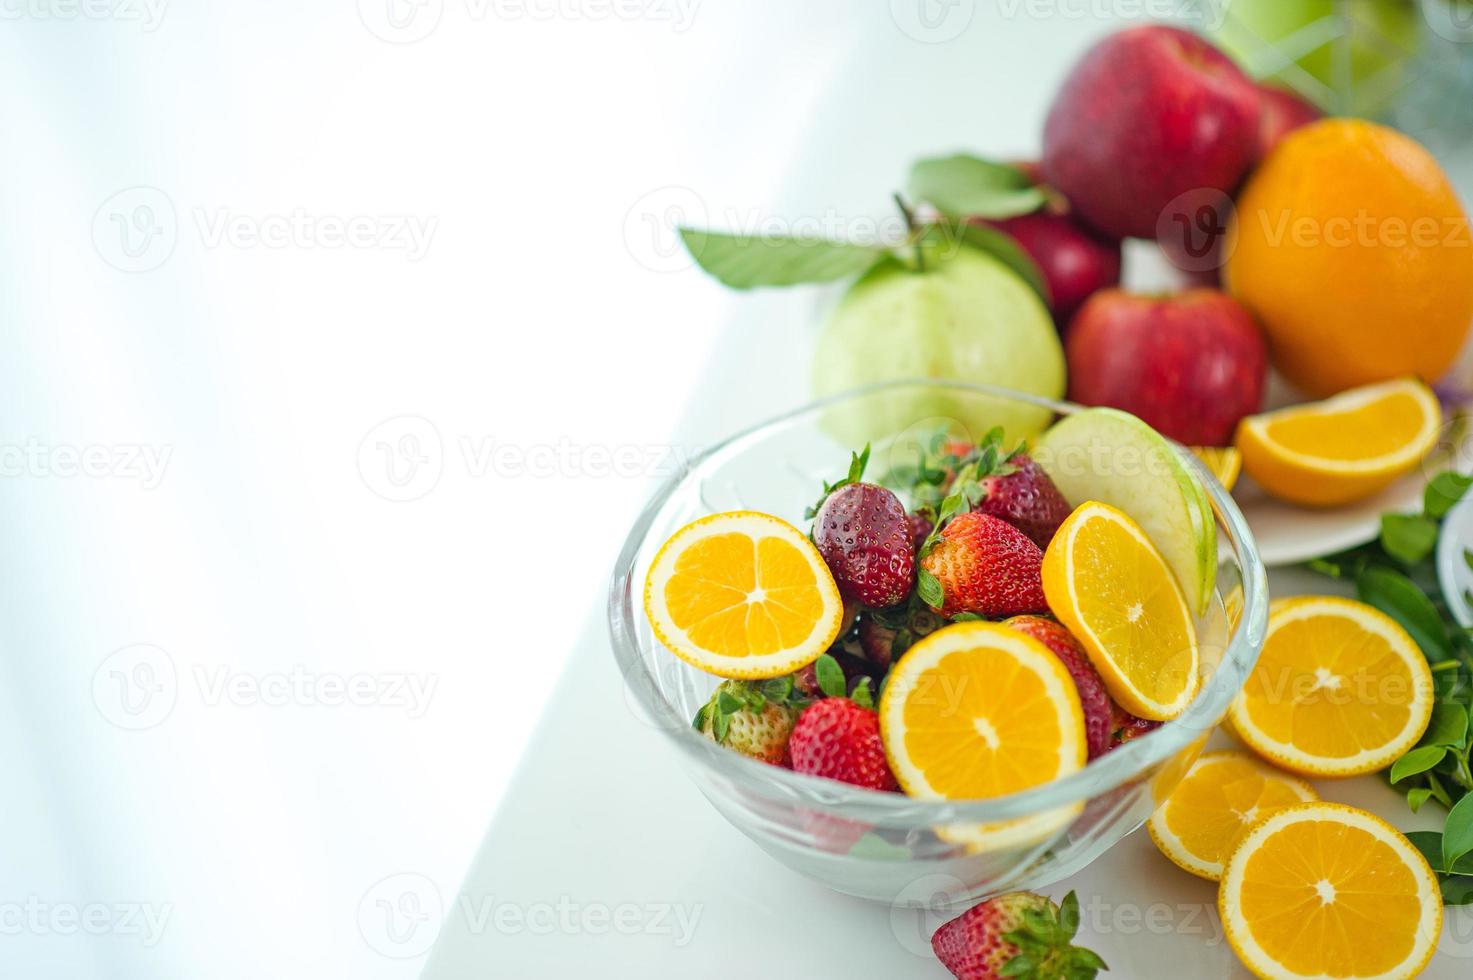 les fruits de la santé amoureux des fruits sains et des soins de santé pour manger des aliments sains. à la peau. le fruit est placé dans une belle table, pomme abricot, banane, orange, dragon, placé photo